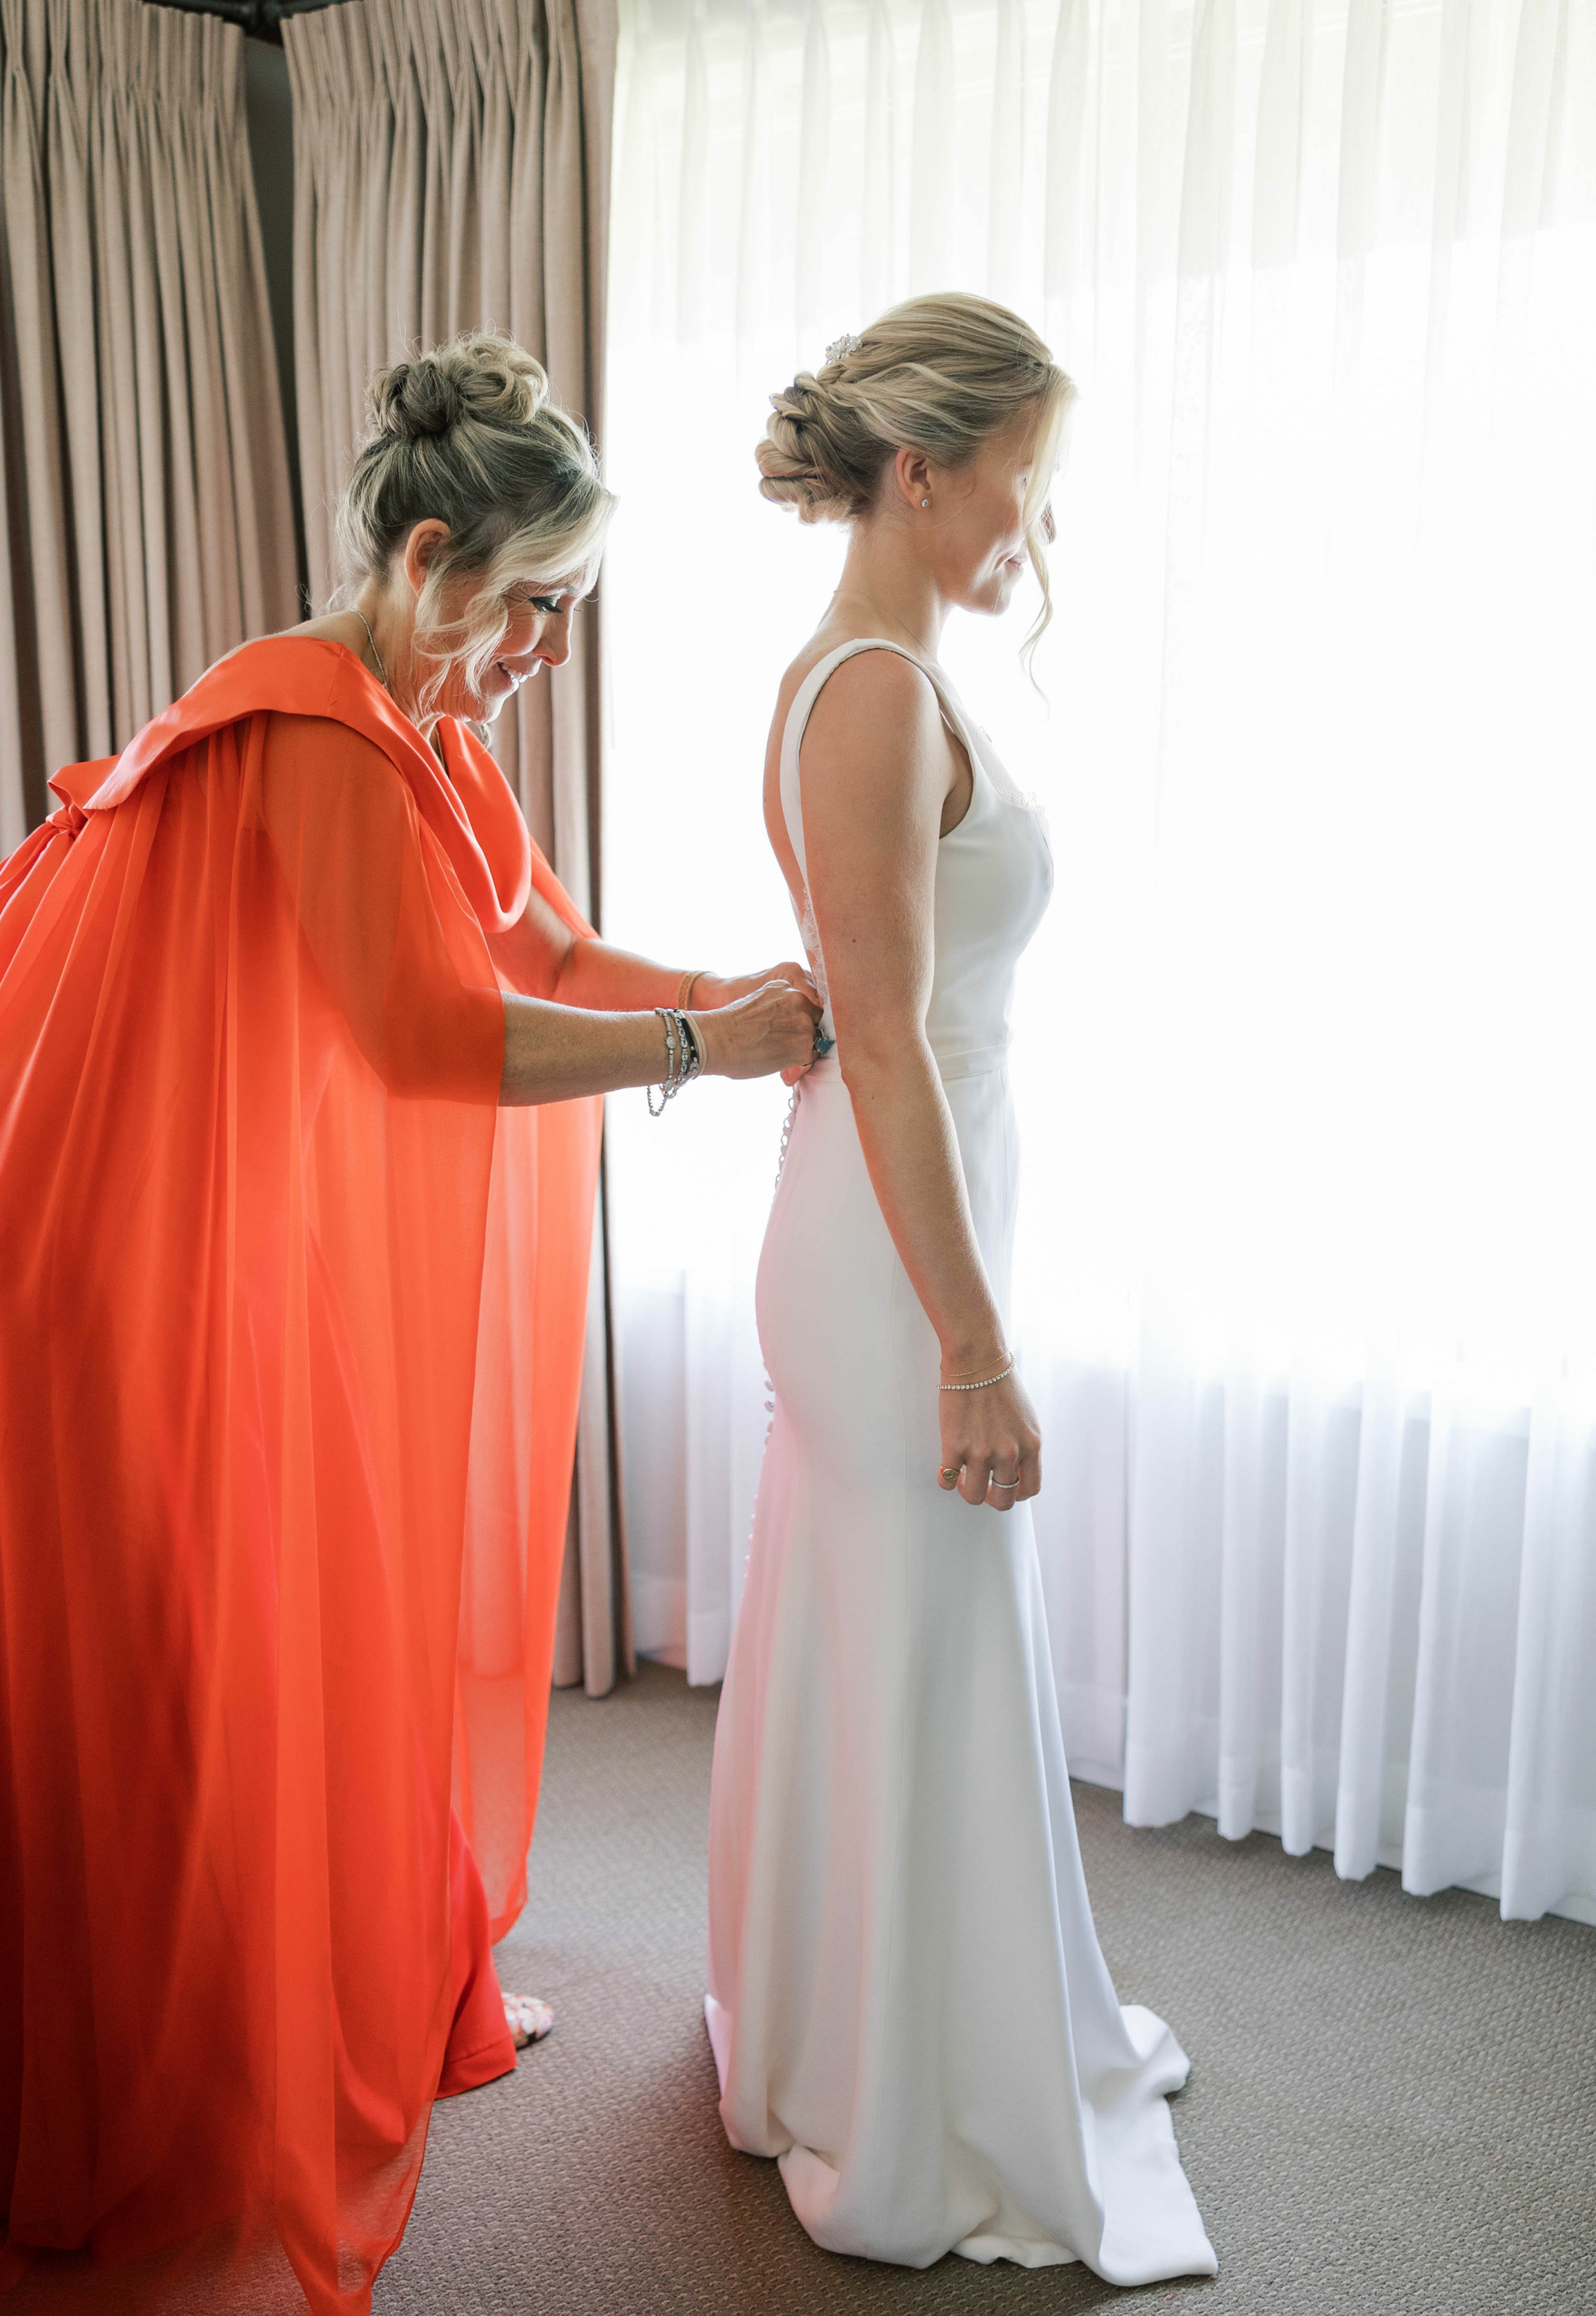 Bà Wardlaw giúp cô Fumia khoác lên mình chiếc váy cưới. (Ảnh: Đăng dưới sự cho phép của Jessica Rice Photography)